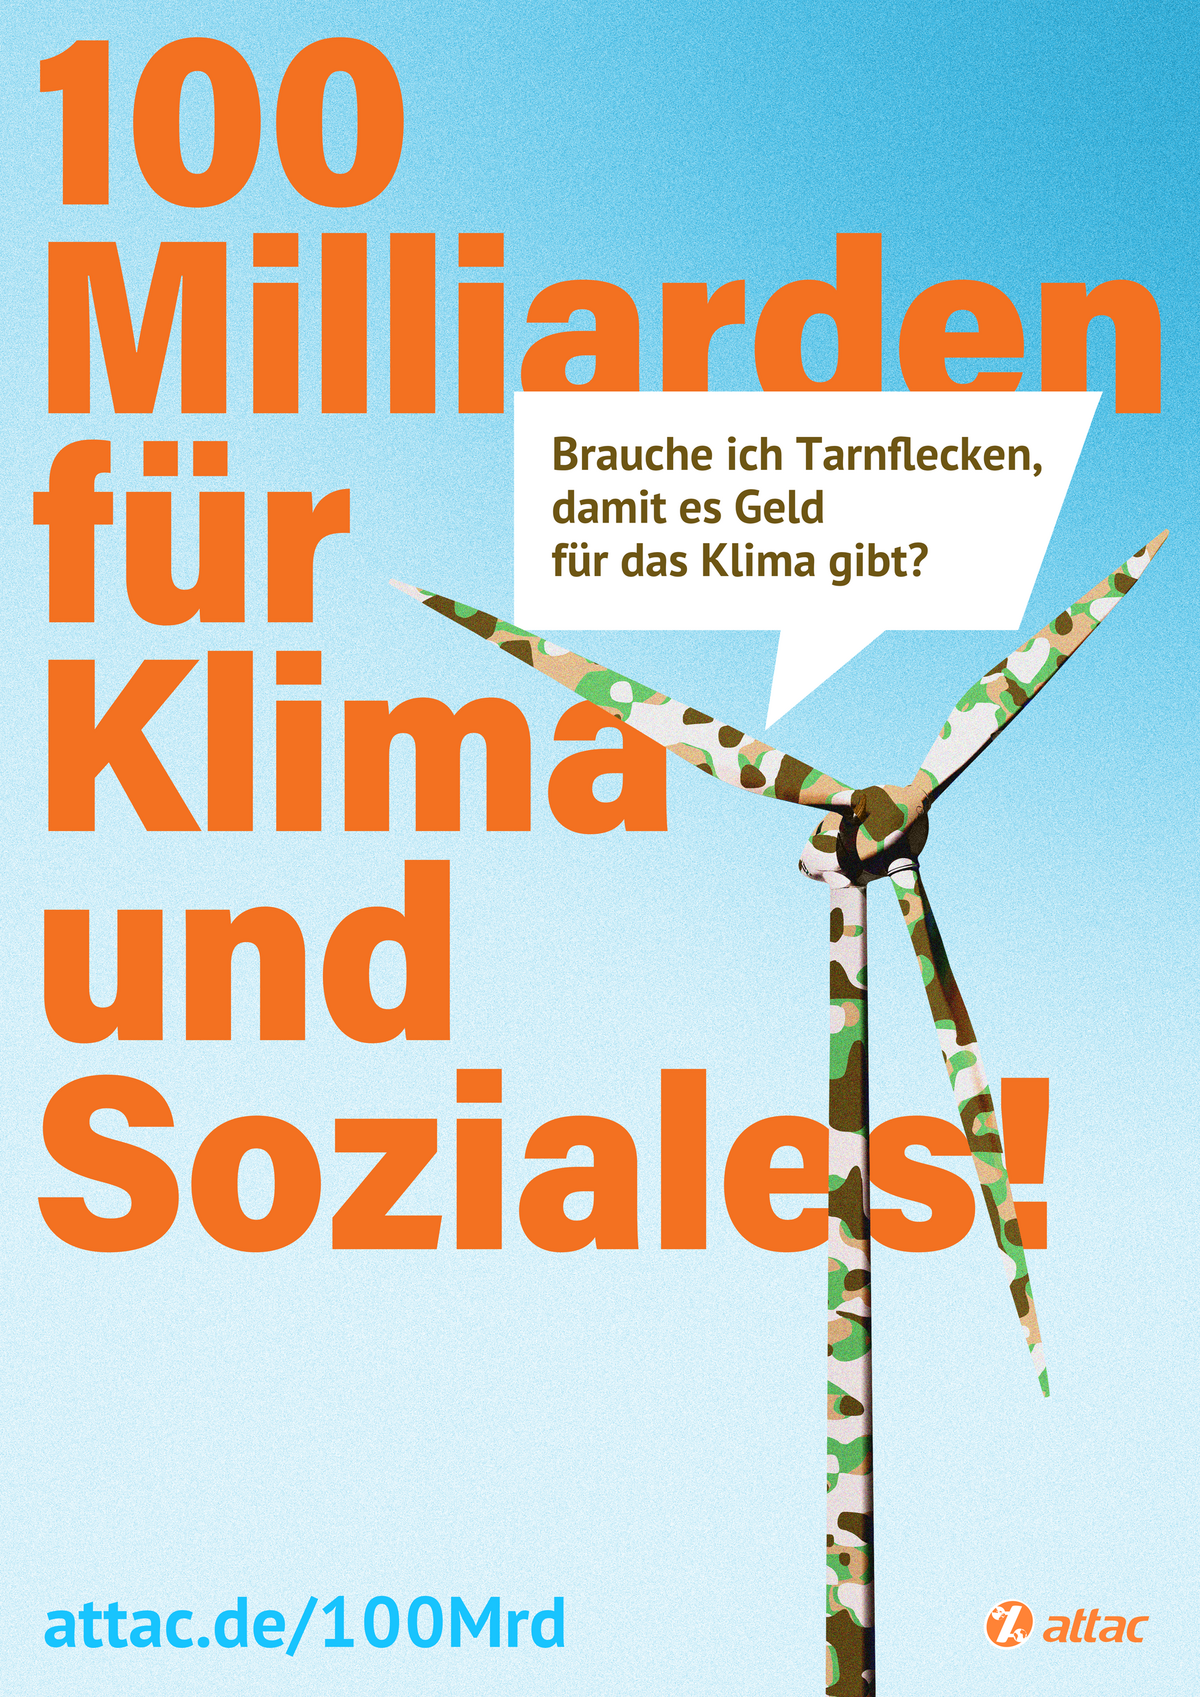 Auf einem Plakat ist ein Windrad mit Tarnflecken, aus dem eine Sprechblase mit dem Text "Muss ich erst Tarnflecken tragen, damit es Geld fürs Klima gibt?" steht. Im Hintergrund des Plakates steht "100 Milliarden für Klima und Soziales!"